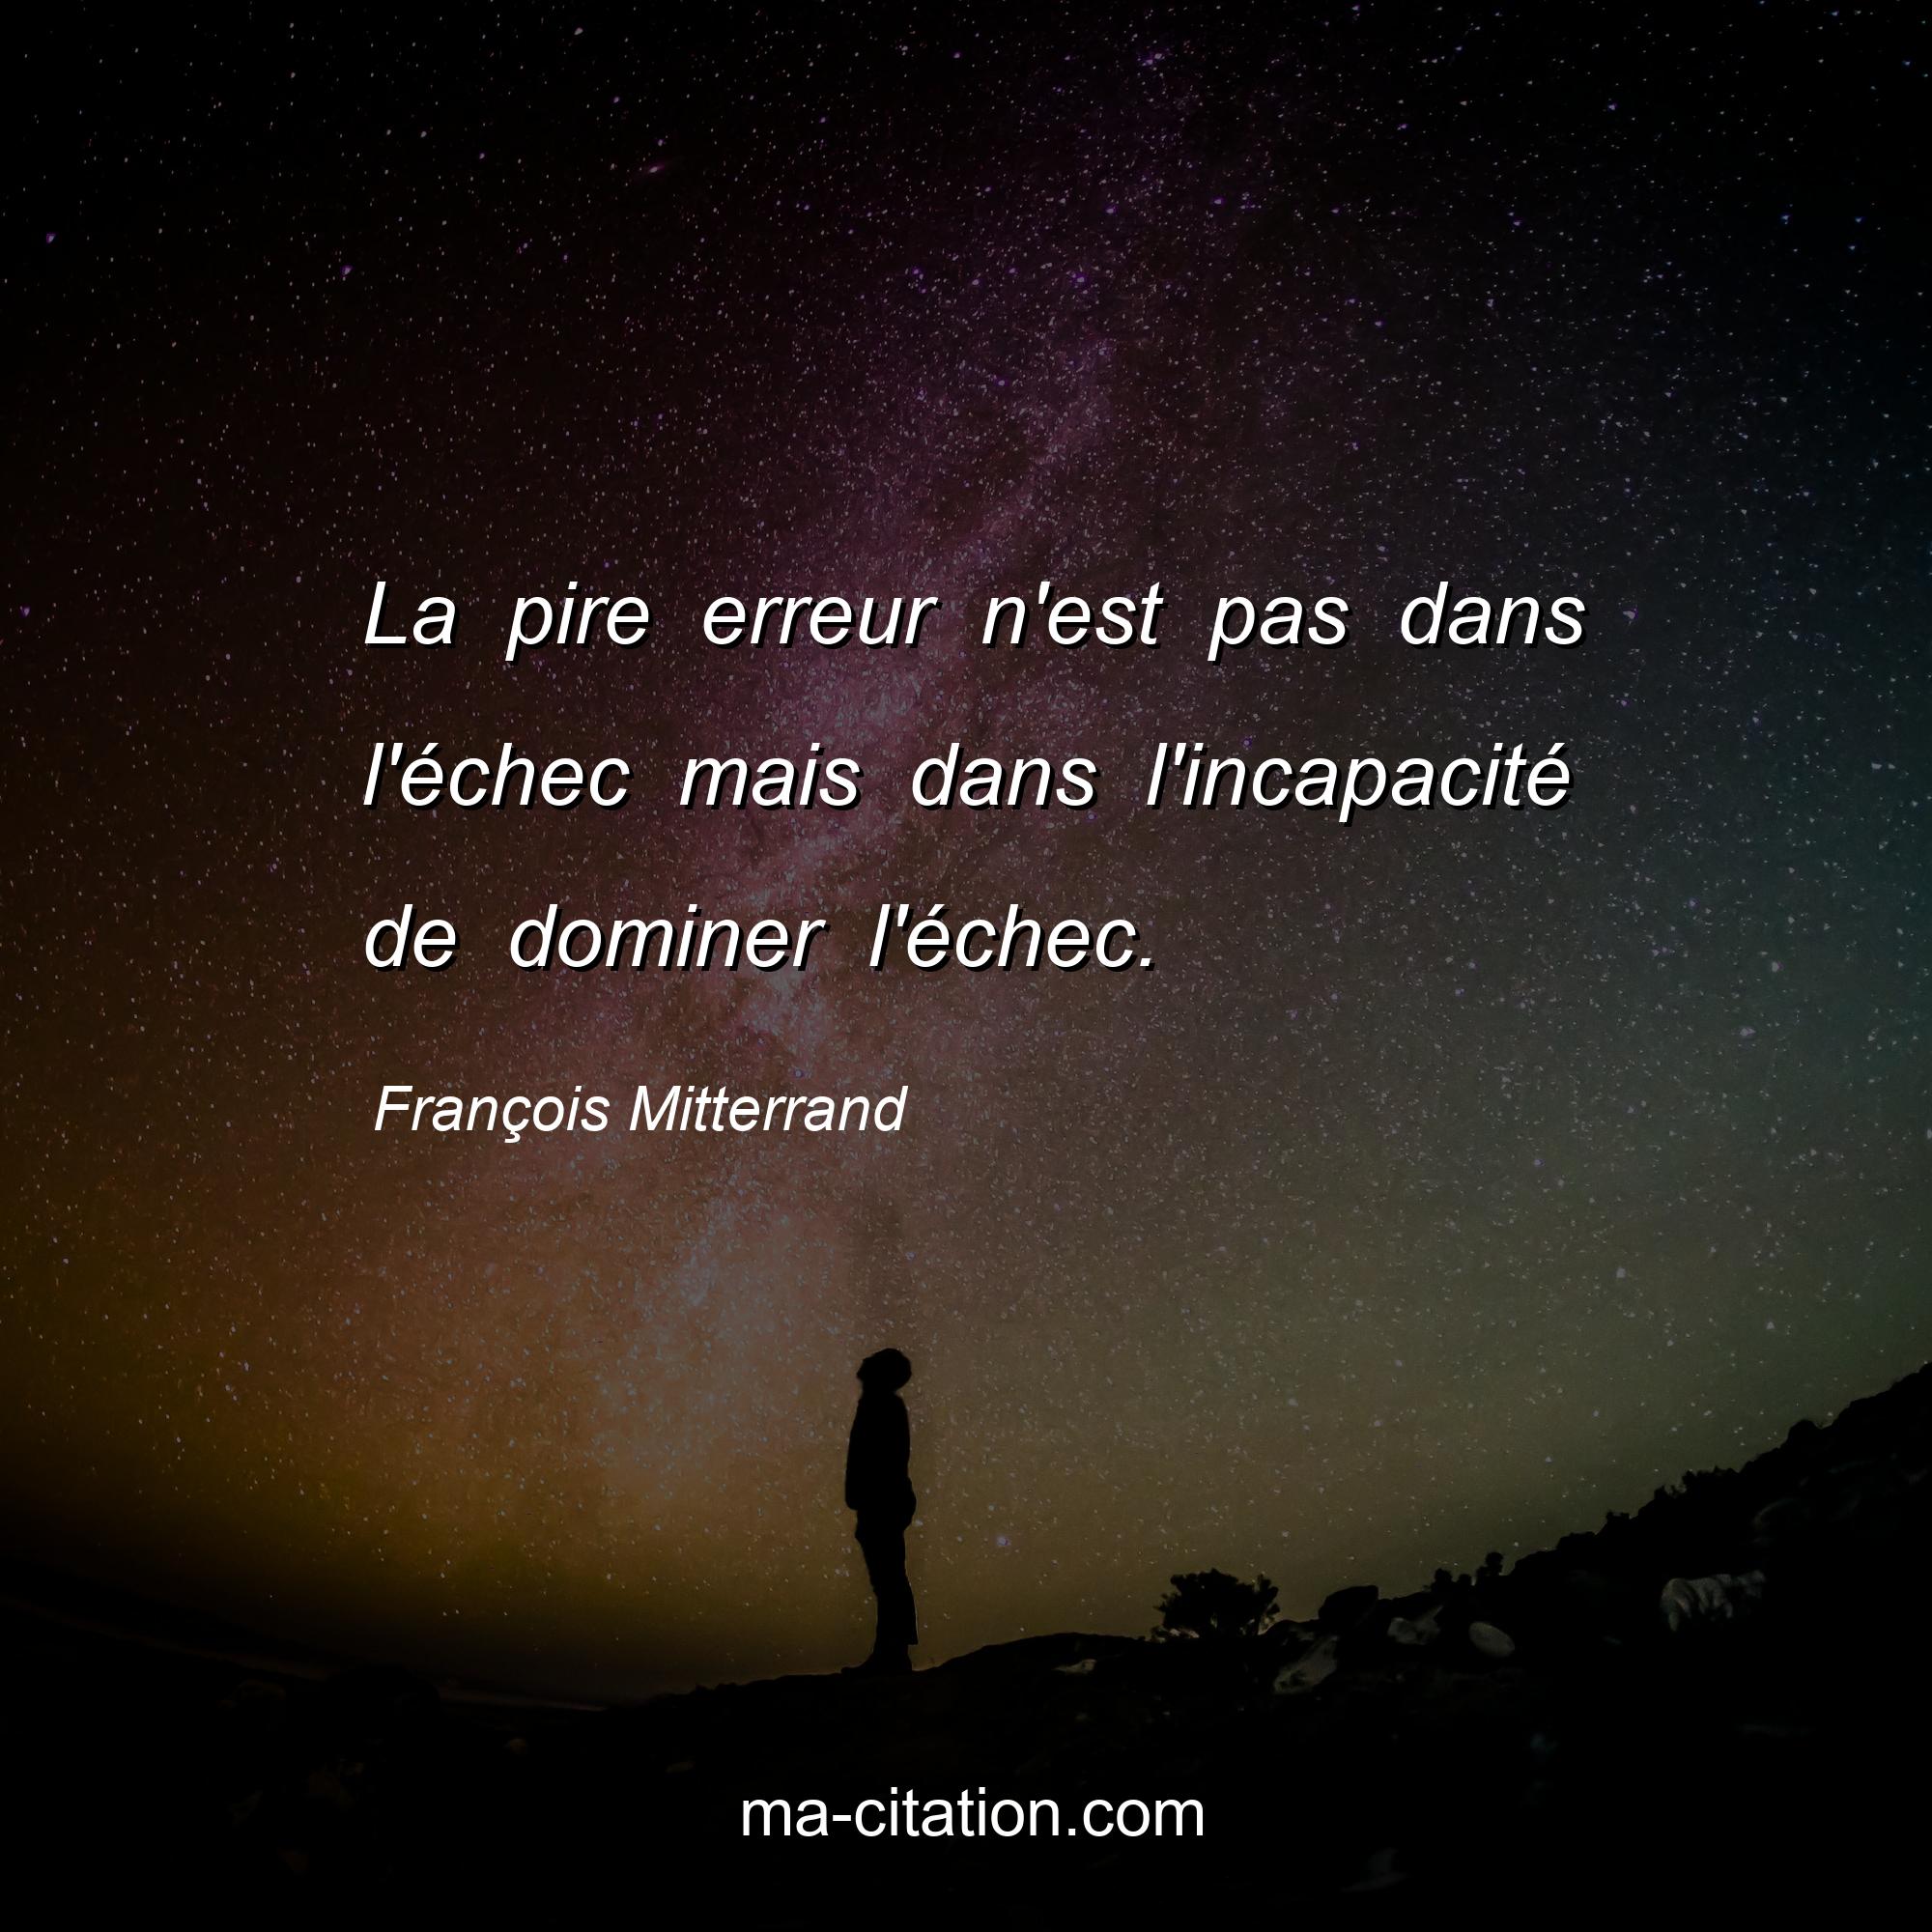 François Mitterrand : La pire erreur n'est pas dans l'échec mais dans l'incapacité de dominer l'échec.